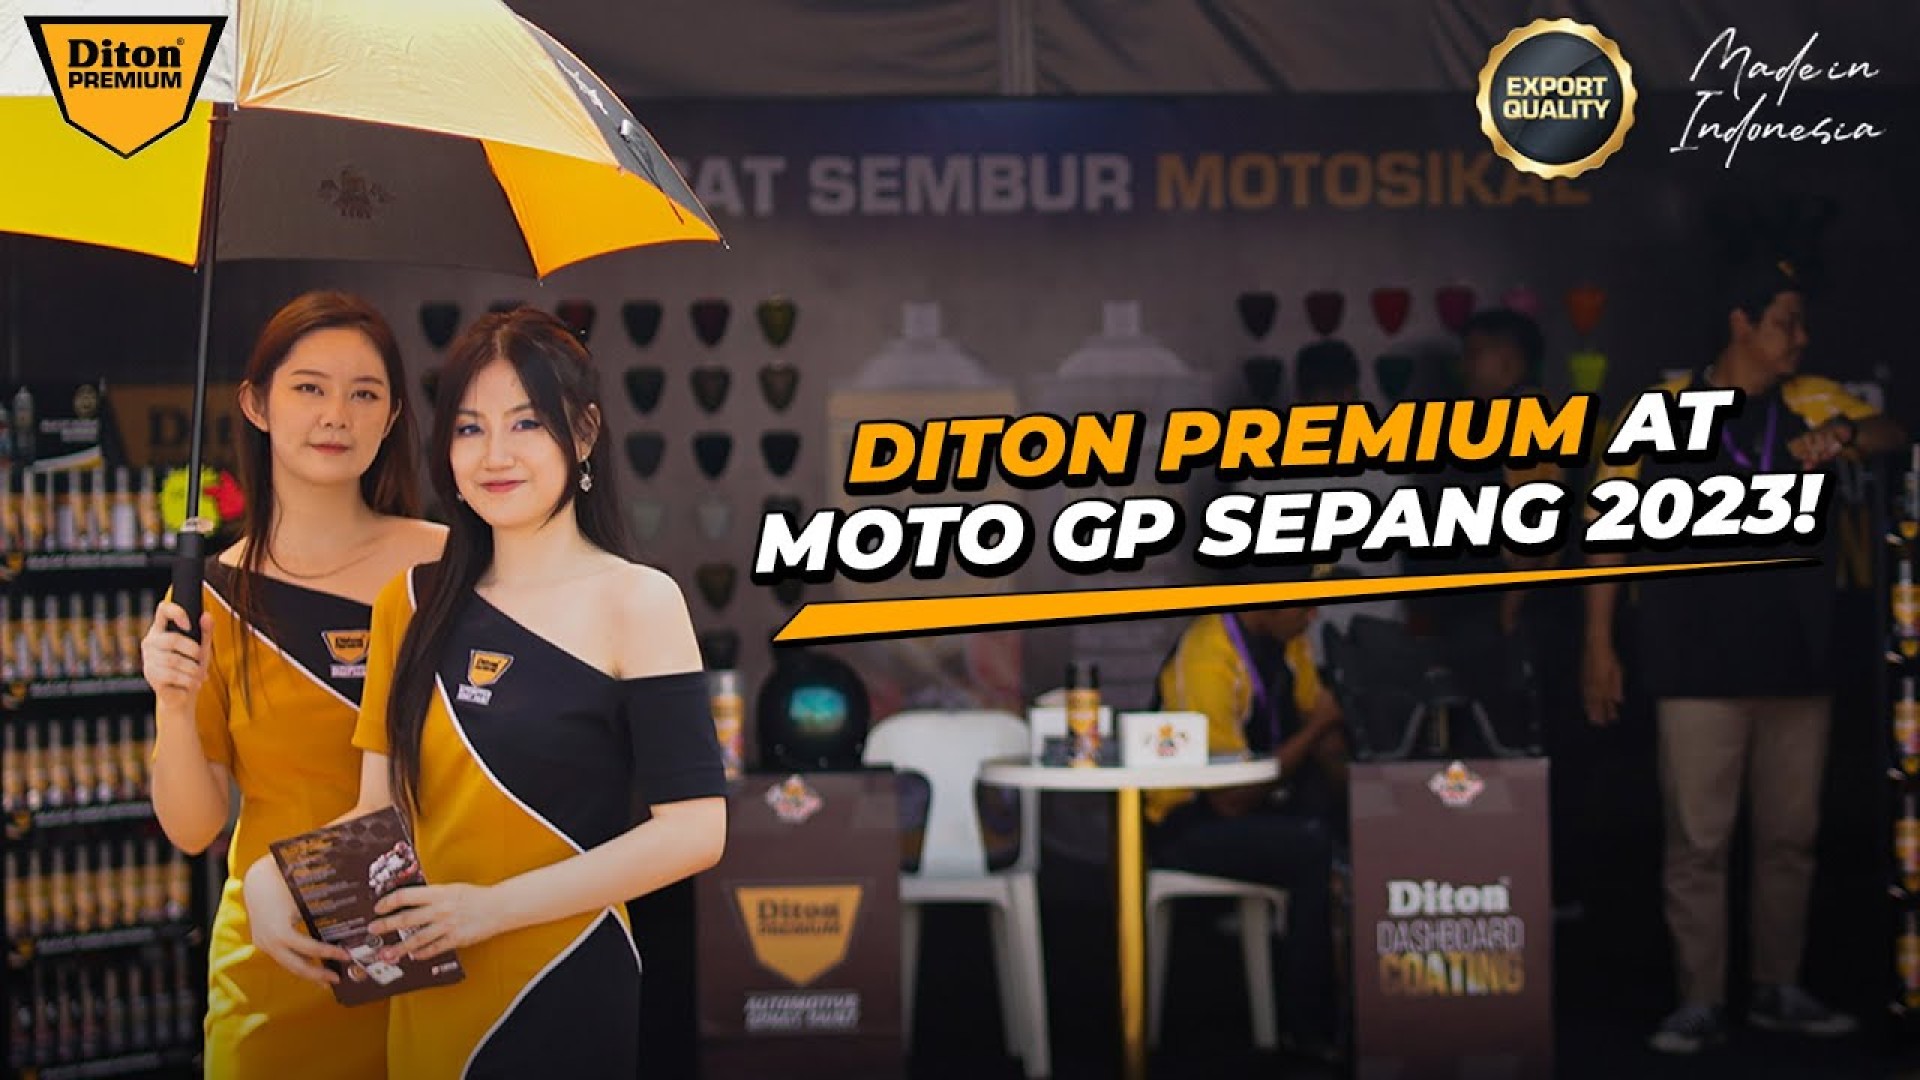 DITON PREMIUM AT MOTO GP SEPANG MALAYSIA 2023